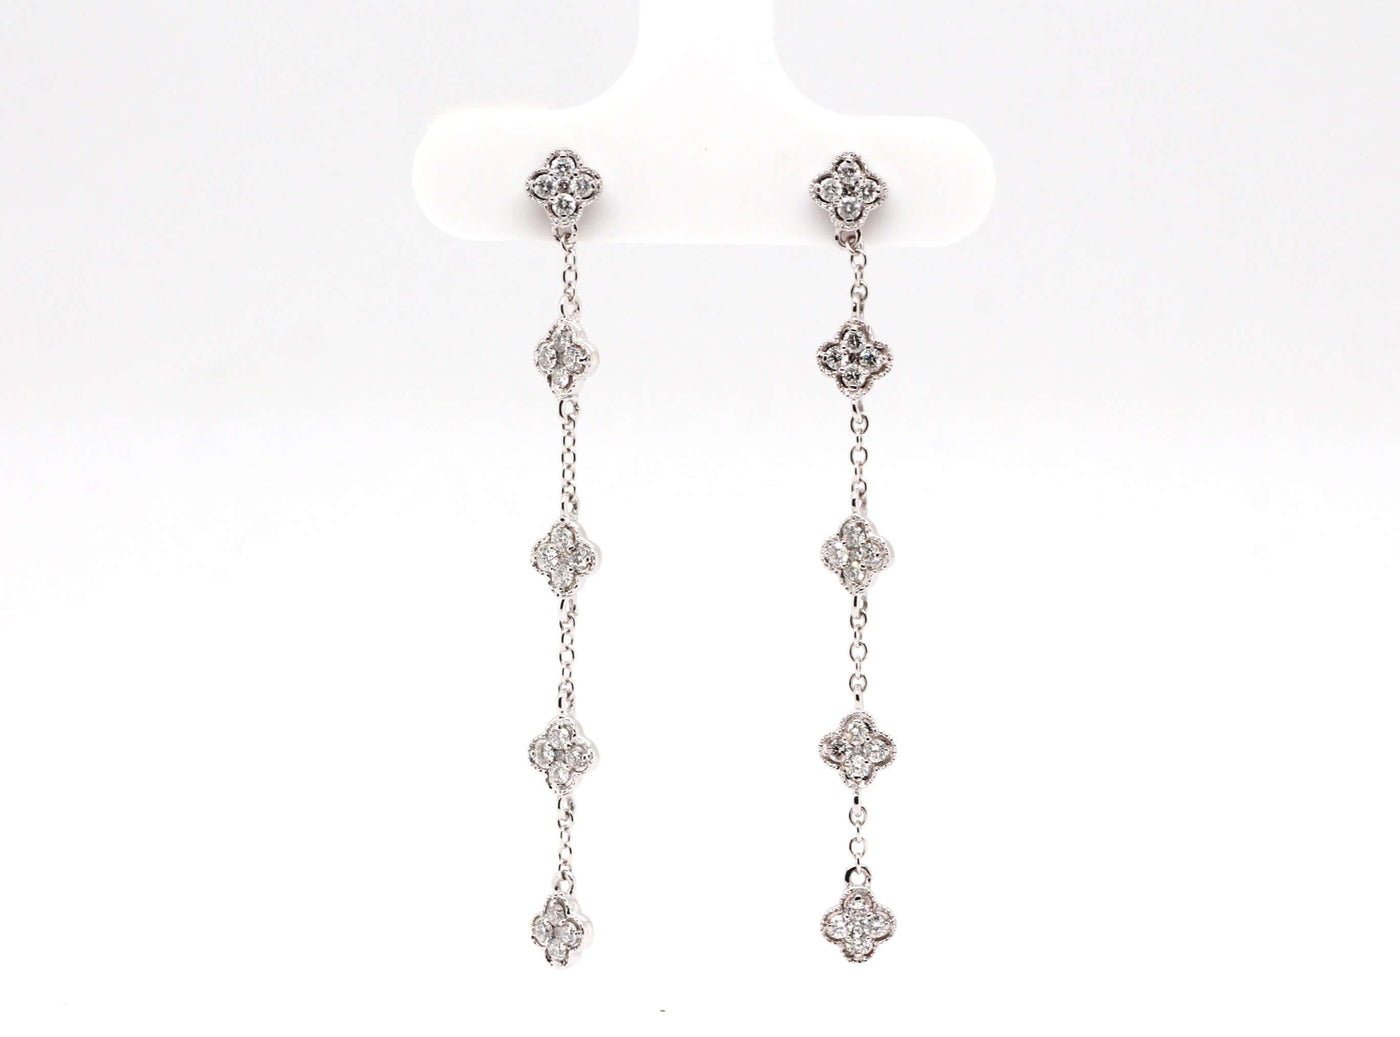 14KW .50 Cttw Diamond Earrings image